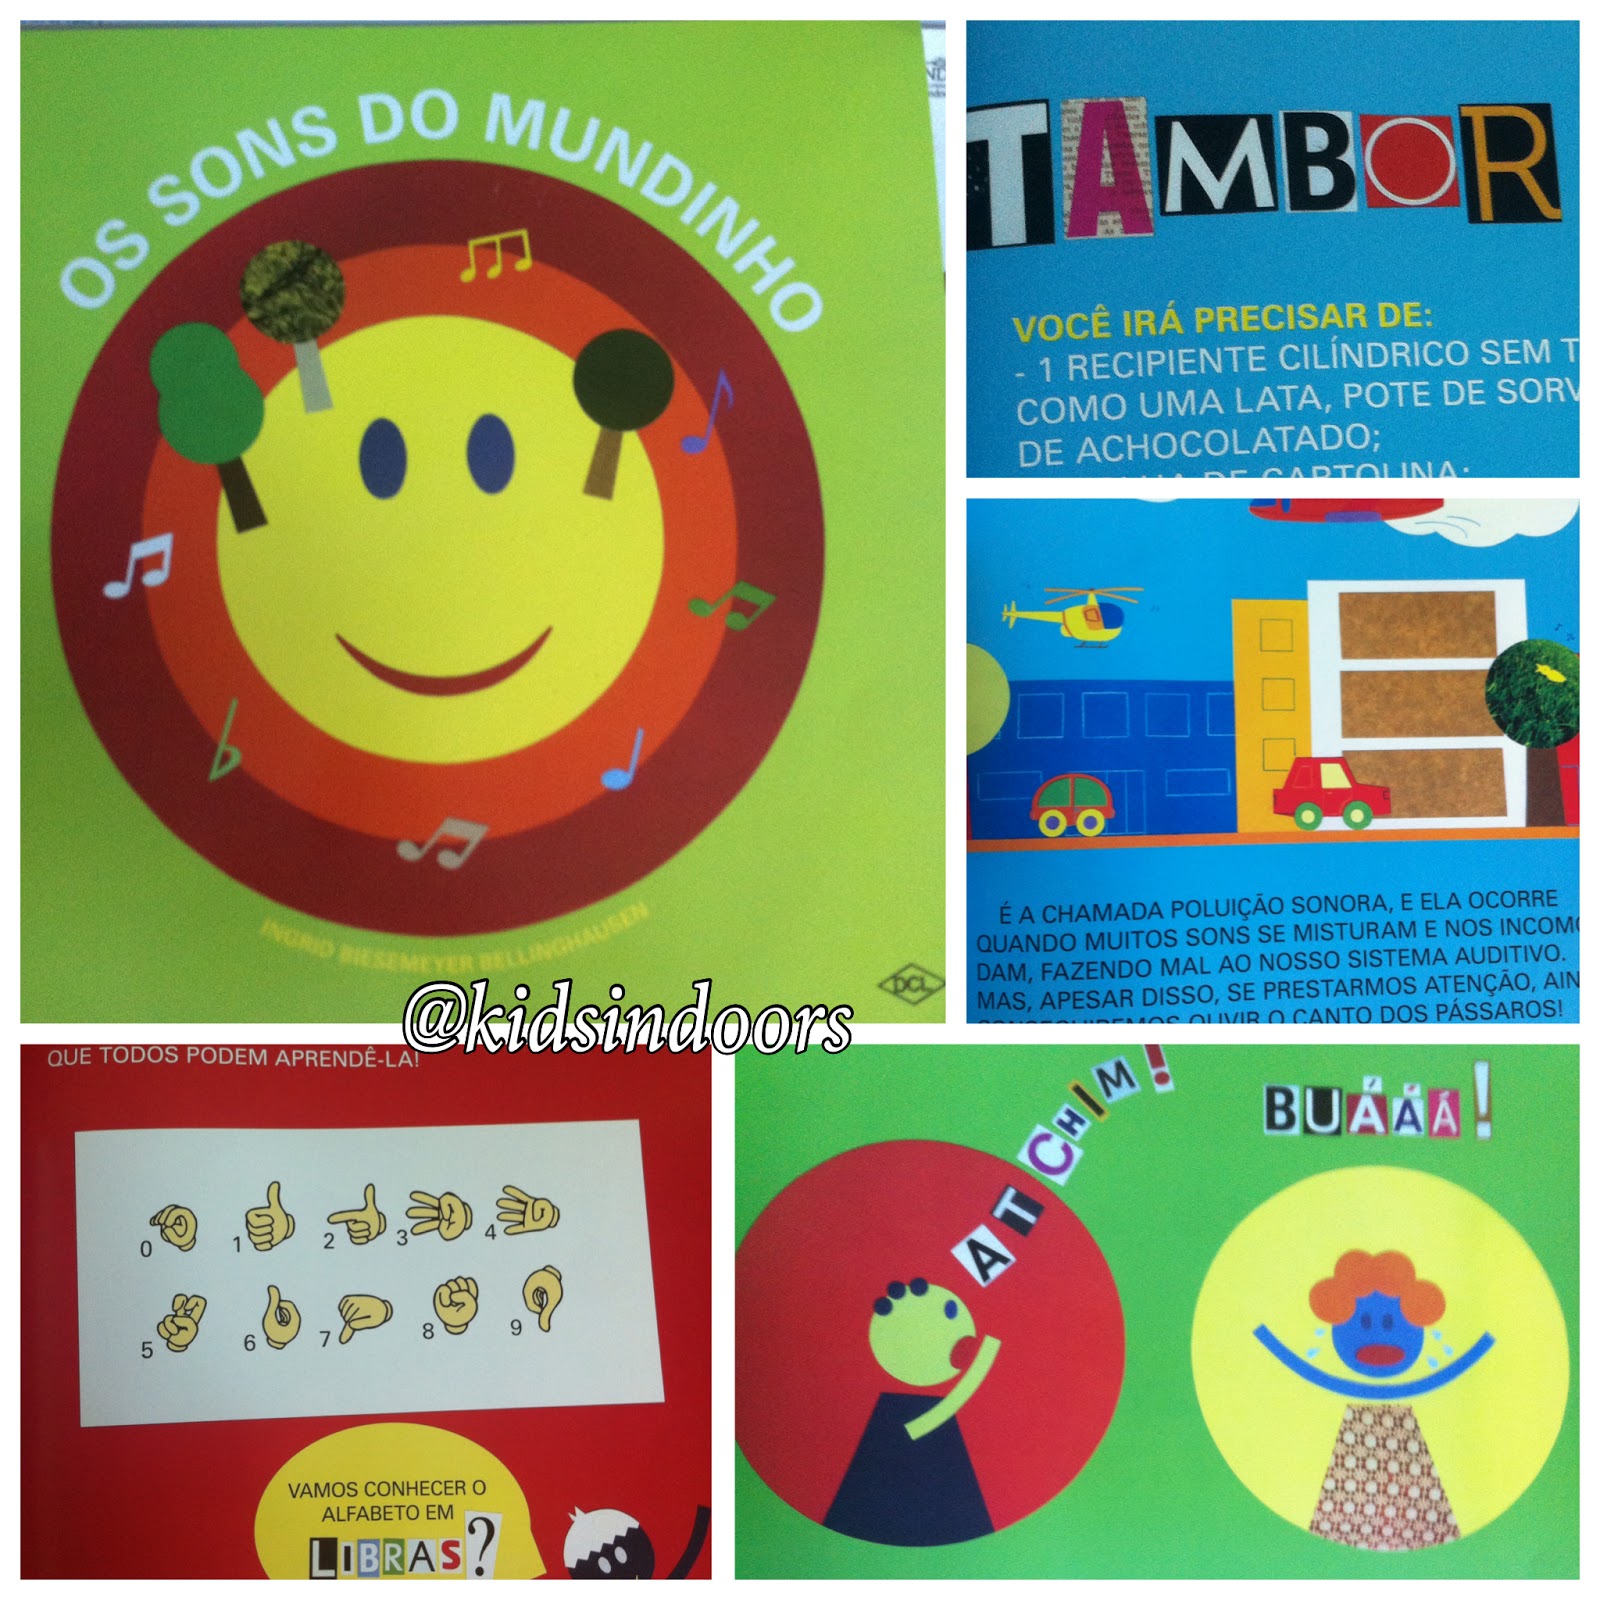 Desenhos educativos em português, 🎵 Música Infantil Educativa, Rimas  para bebês